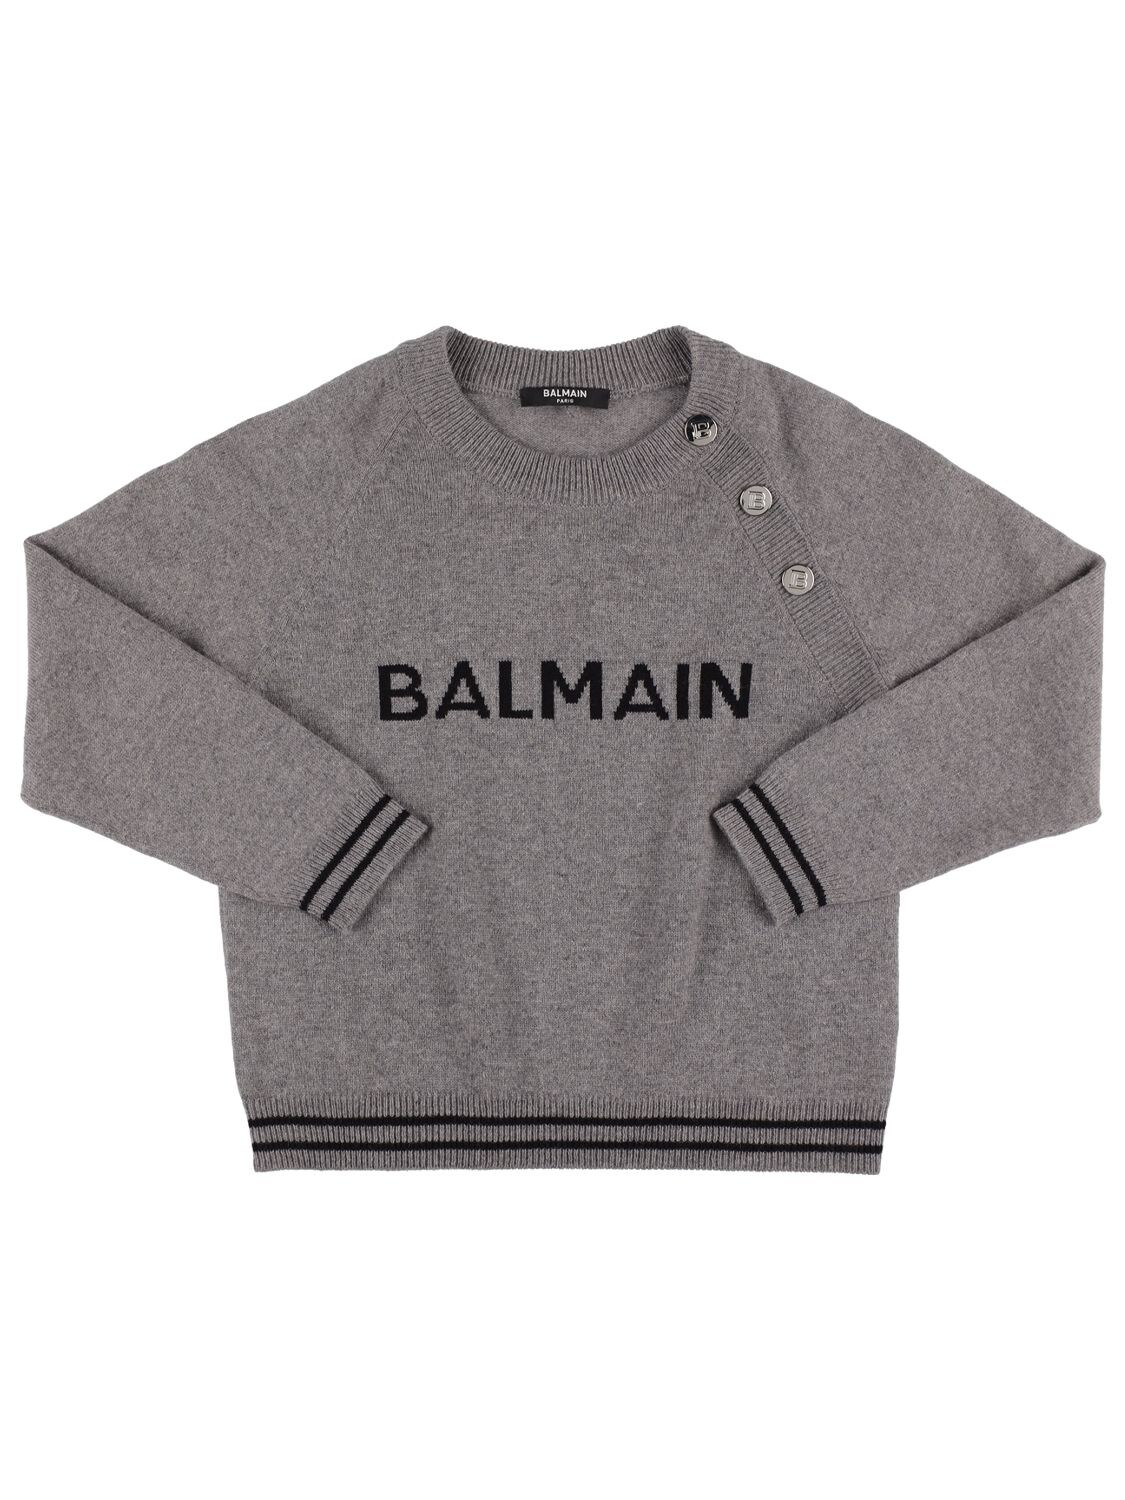 Balmain Kids' Wool Blend Knit Sweater In Grey